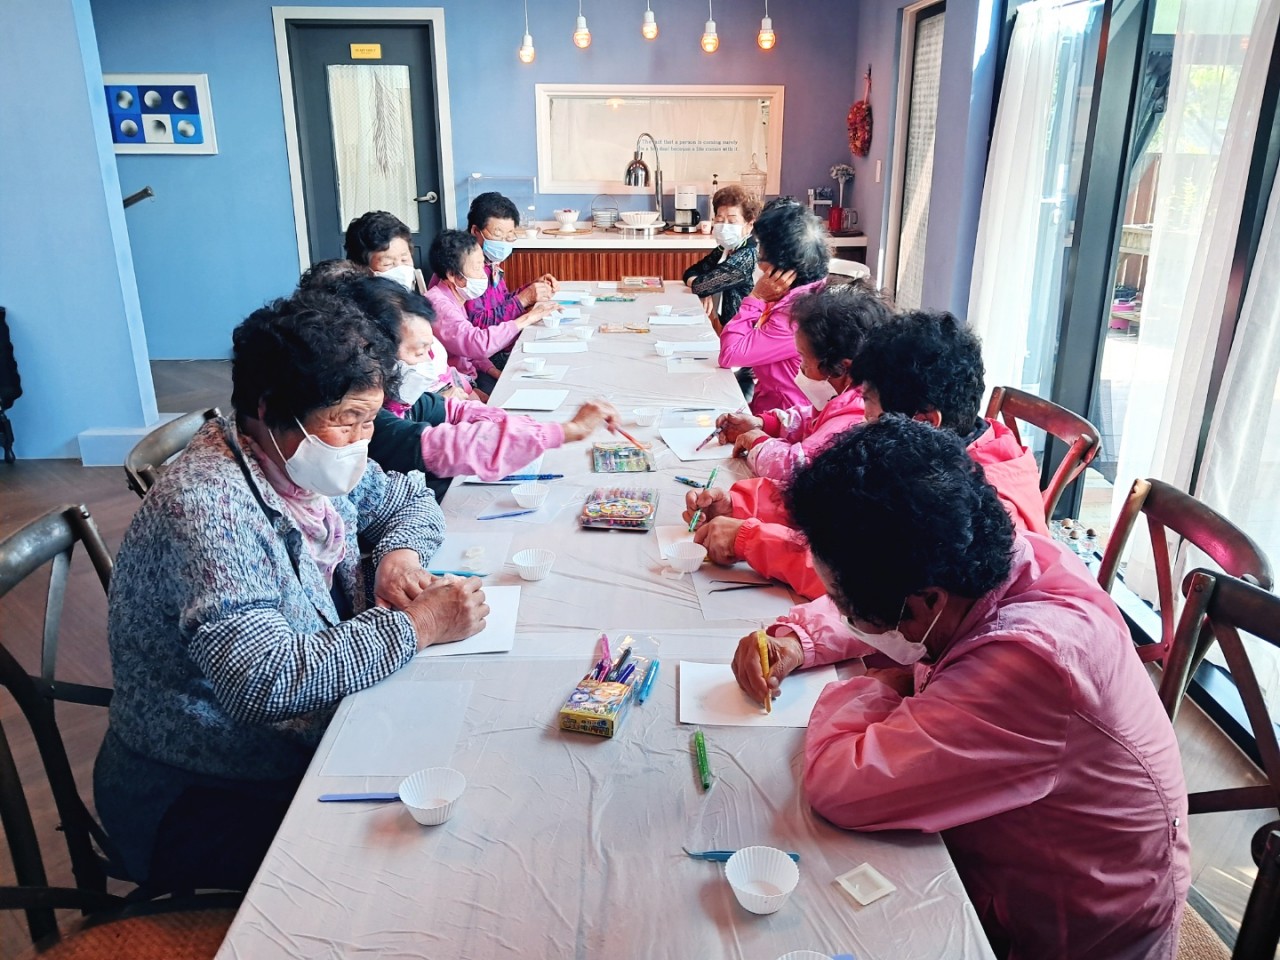 Hội người bà Hàn Quốc 'không bao giờ là quá già cho nghệ thuật' và câu chuyện chữa lành từ trái tim - Ảnh 2.